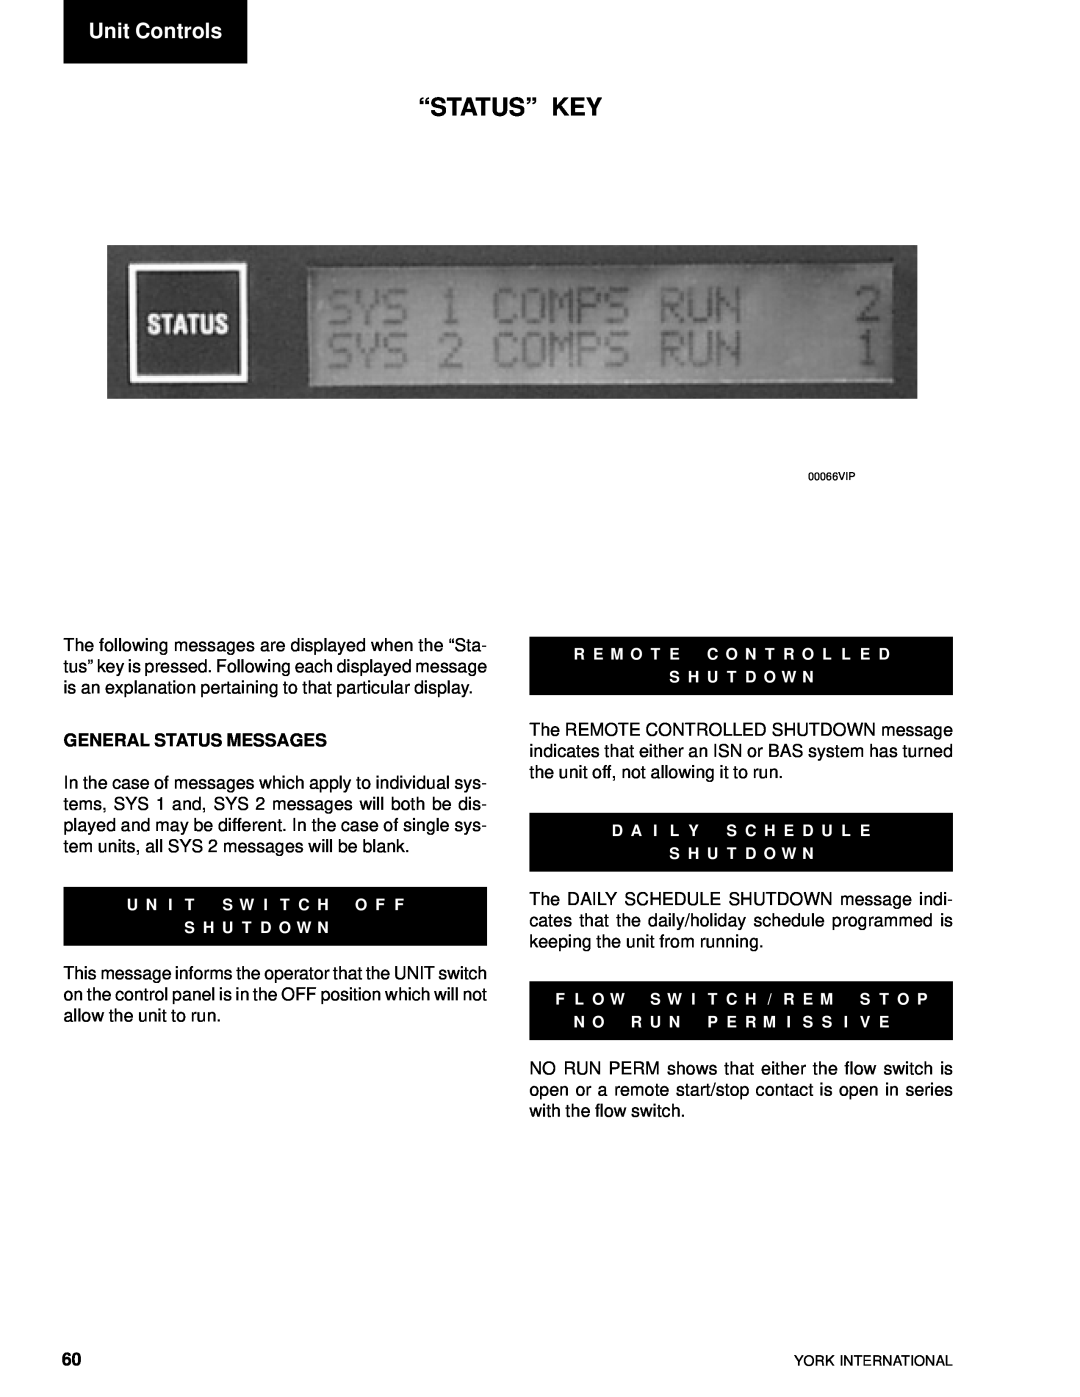 York YCAL0014SC, YCAL0080SC manual “Status” Key, Unit Controls, General Status Messages 